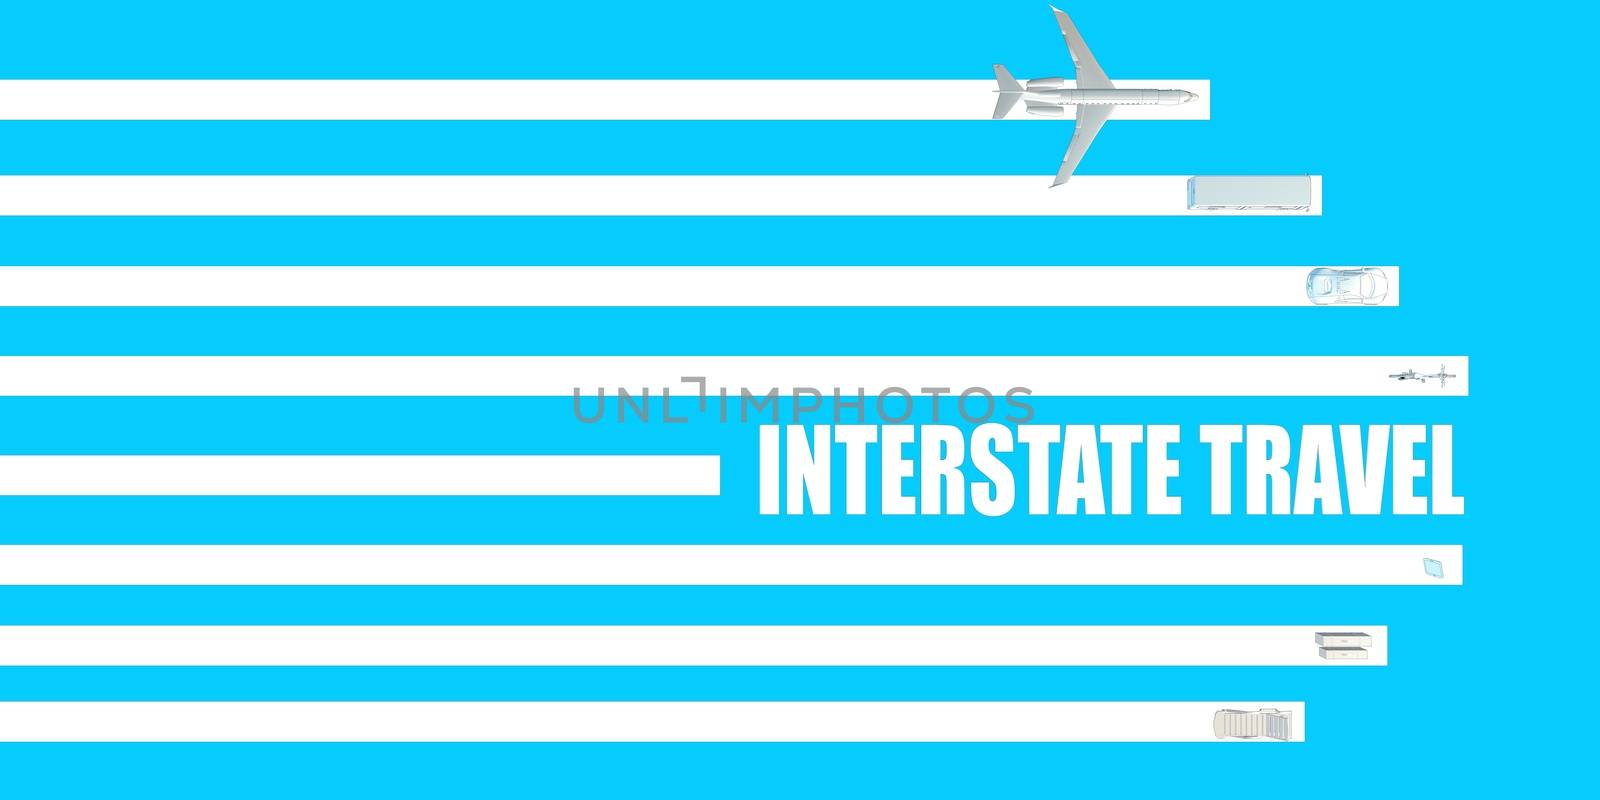 Interstate Travel by kentoh